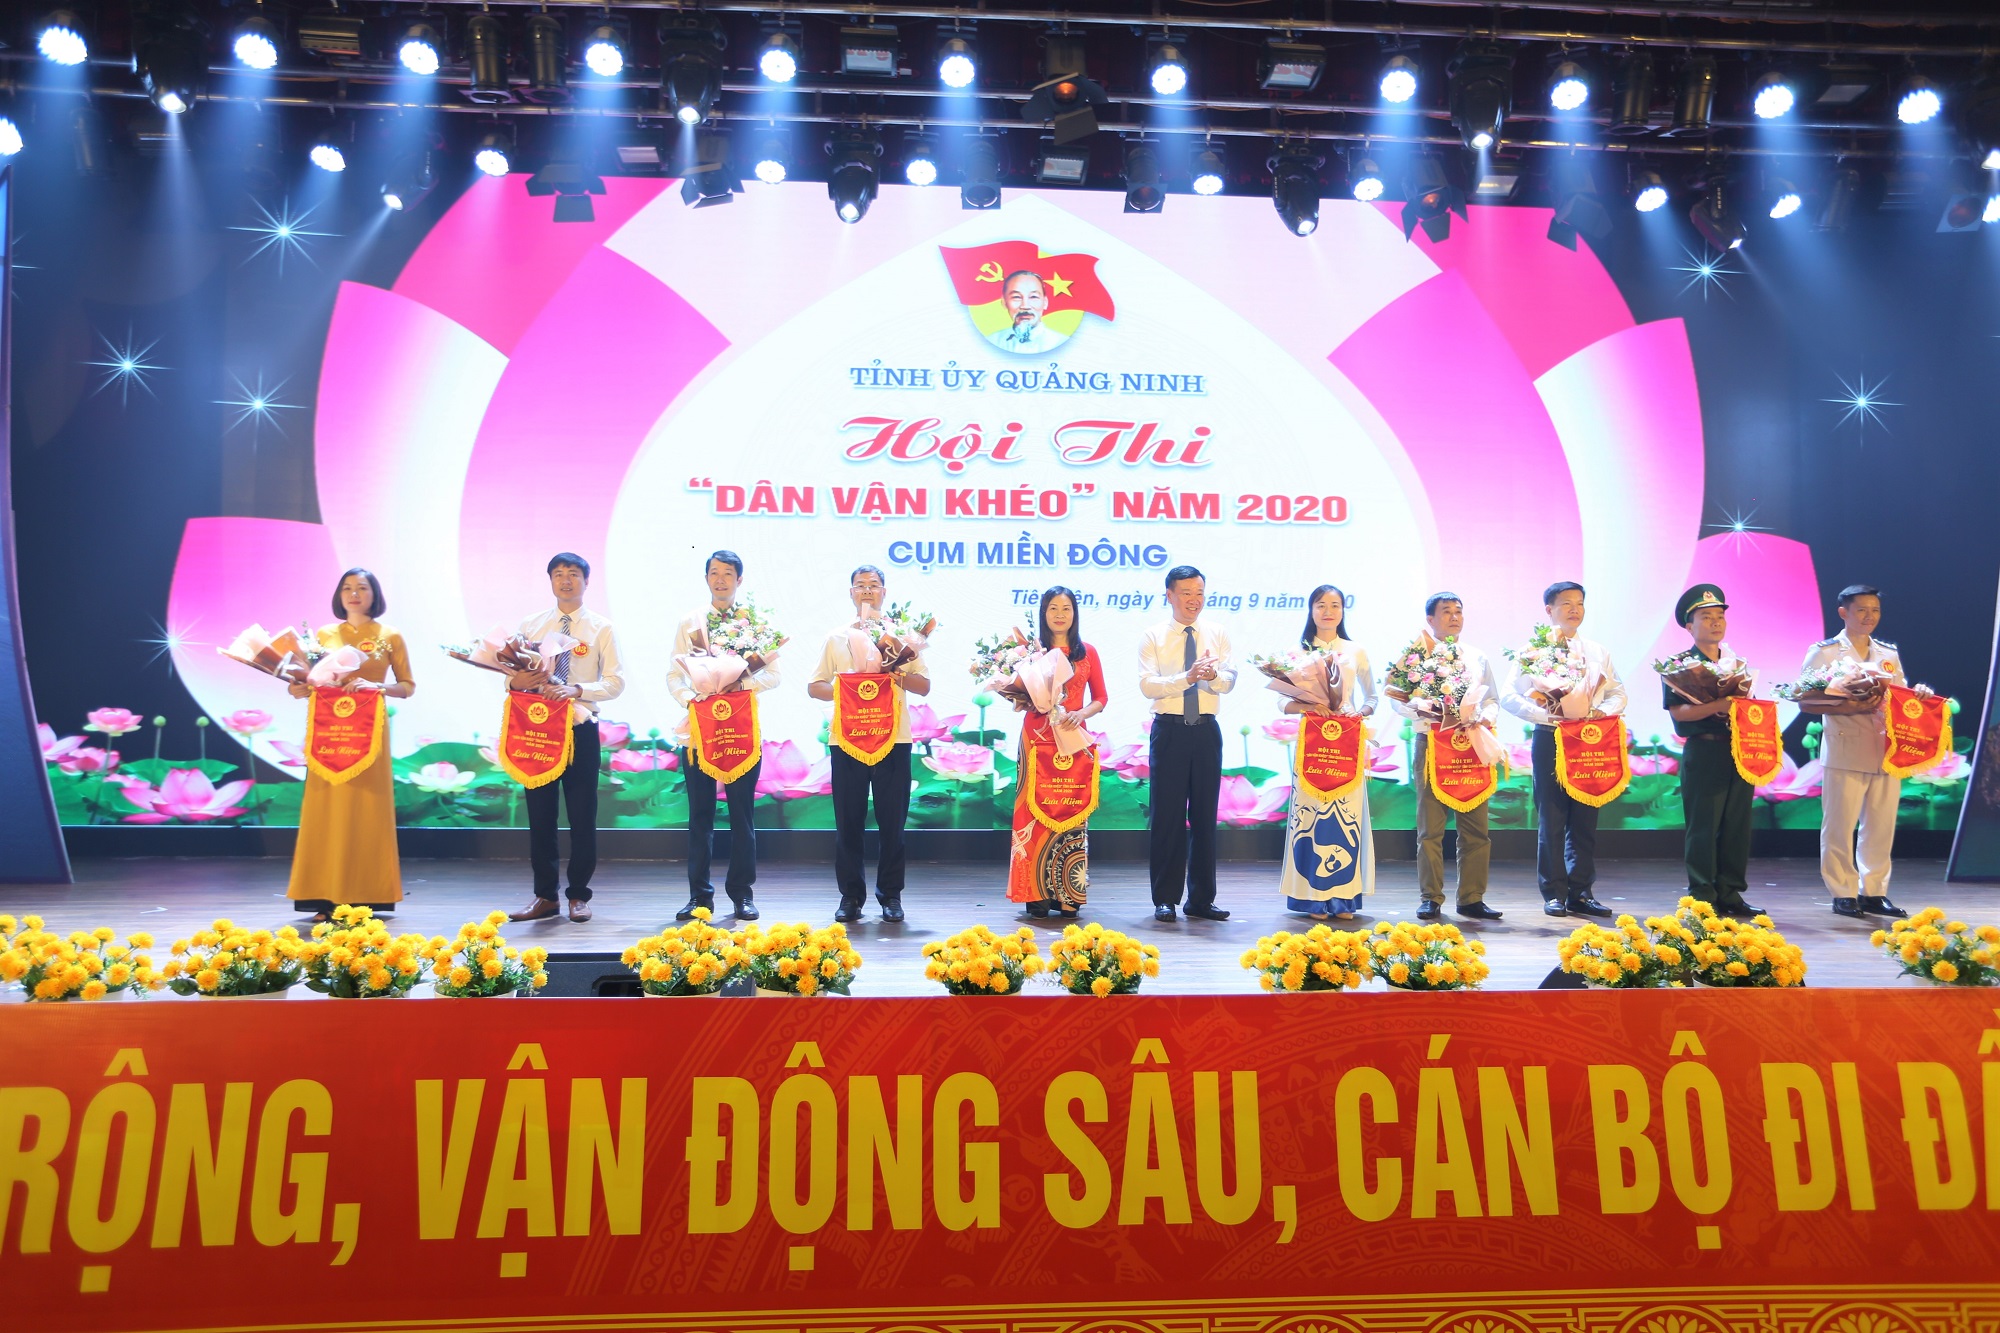 Hội thi Dân vận khéo tỉnh Quảng Ninh năm 2020 cụm miền Đông